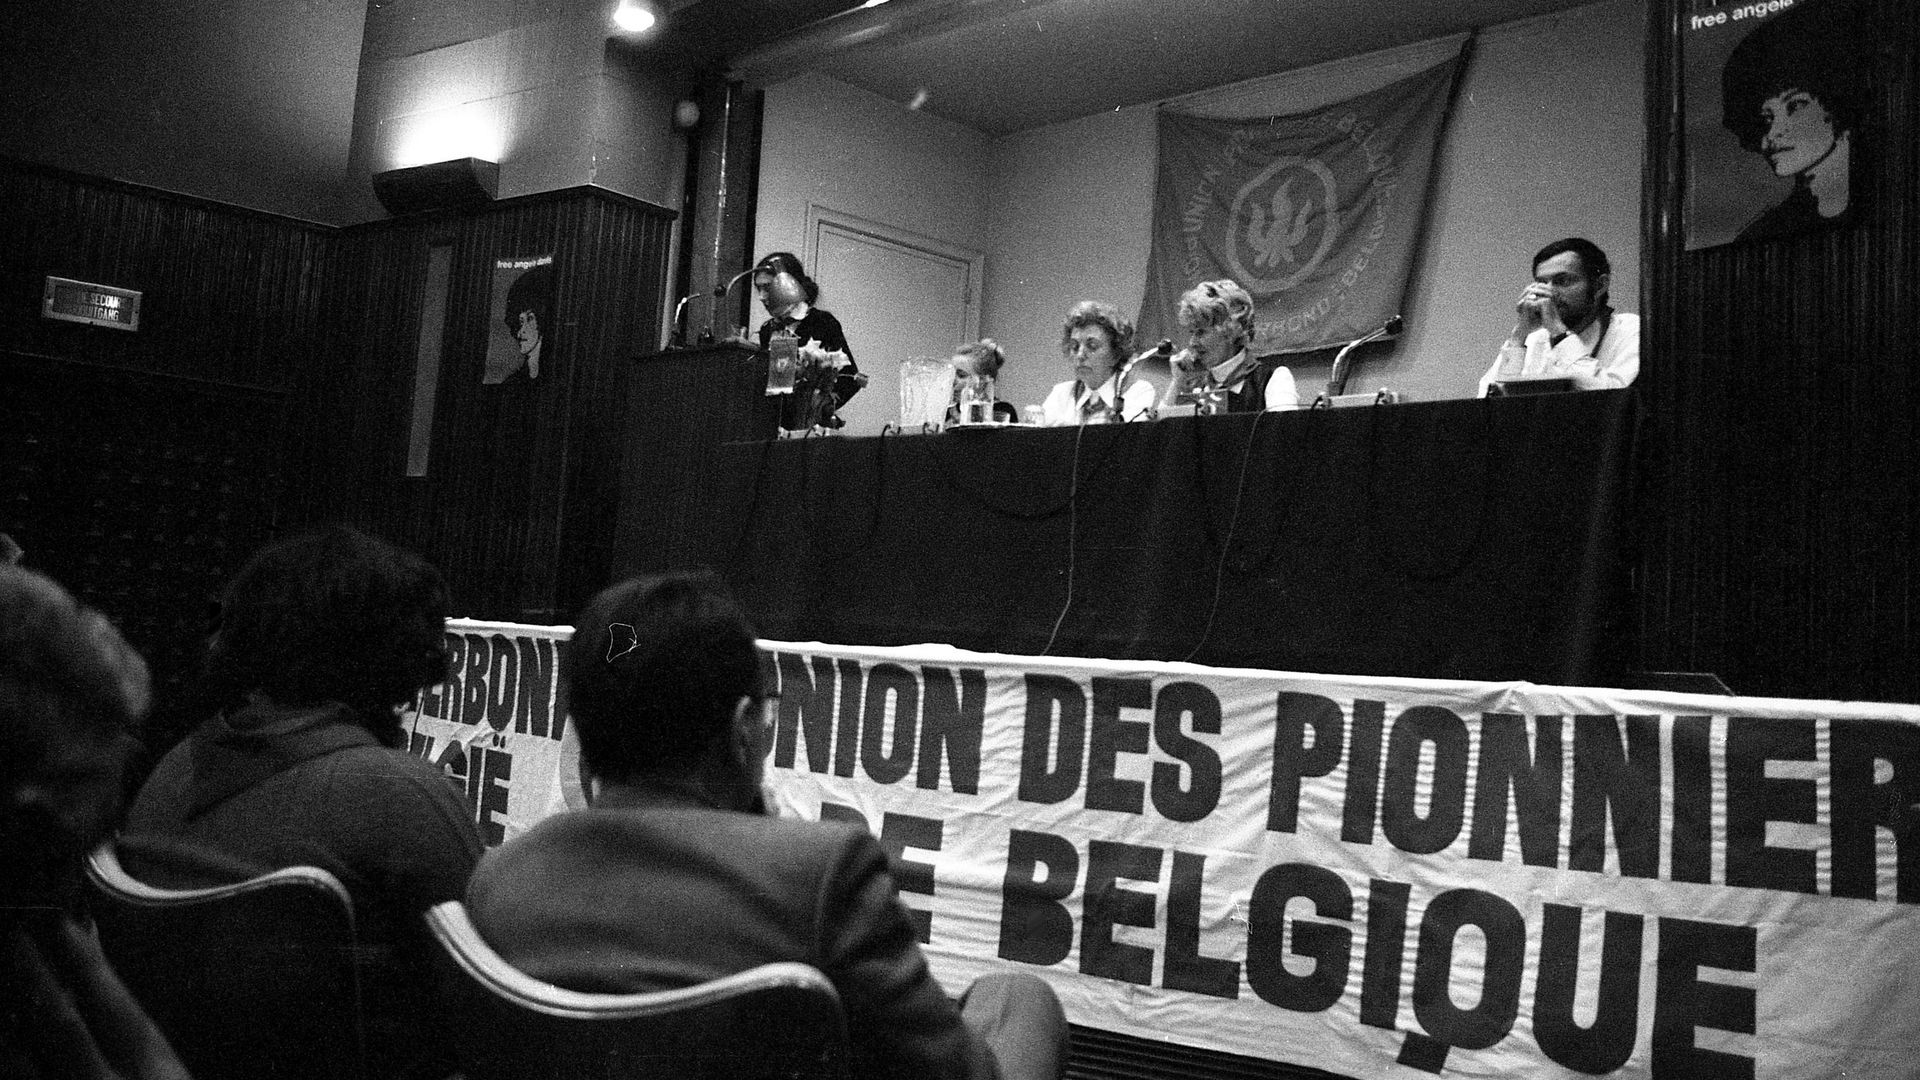 Cette photo d’archive datée du 20 février 1972 montre une réunion de l’Union des Pionniers de Belgique, un mouvement de jeunesse dirigé par le Parti communiste belge (PCB).